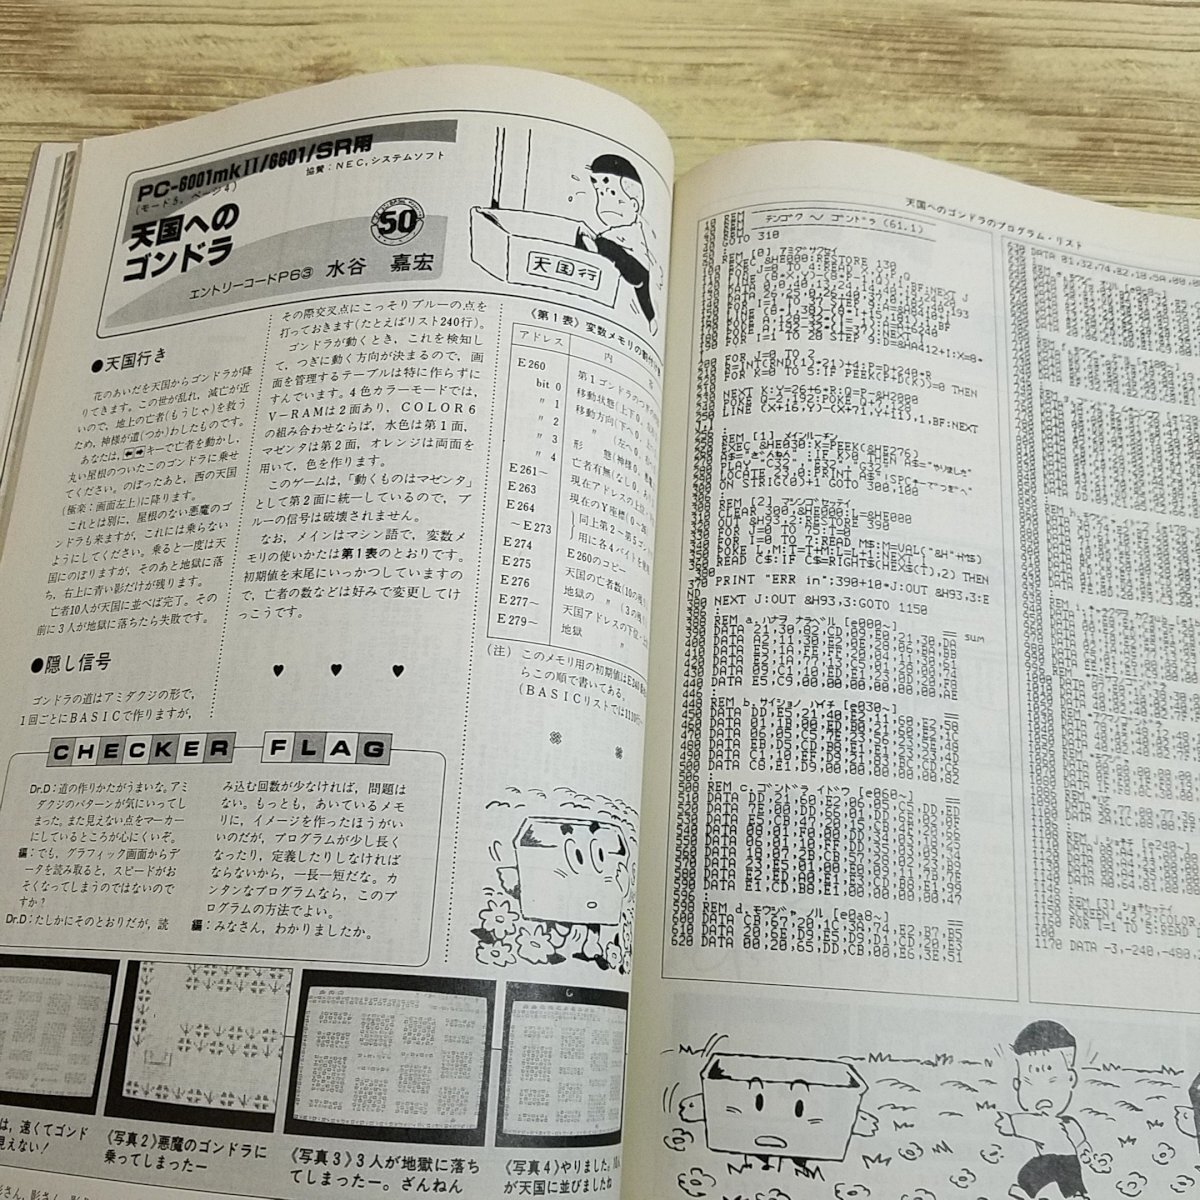 パソコン雑誌[マイコンBASICマガジン 1986年4月号] プログラムリスト55本 PCゲーム レトロPC レトロゲーム ファミコンでゲームを作ろう【送_画像9